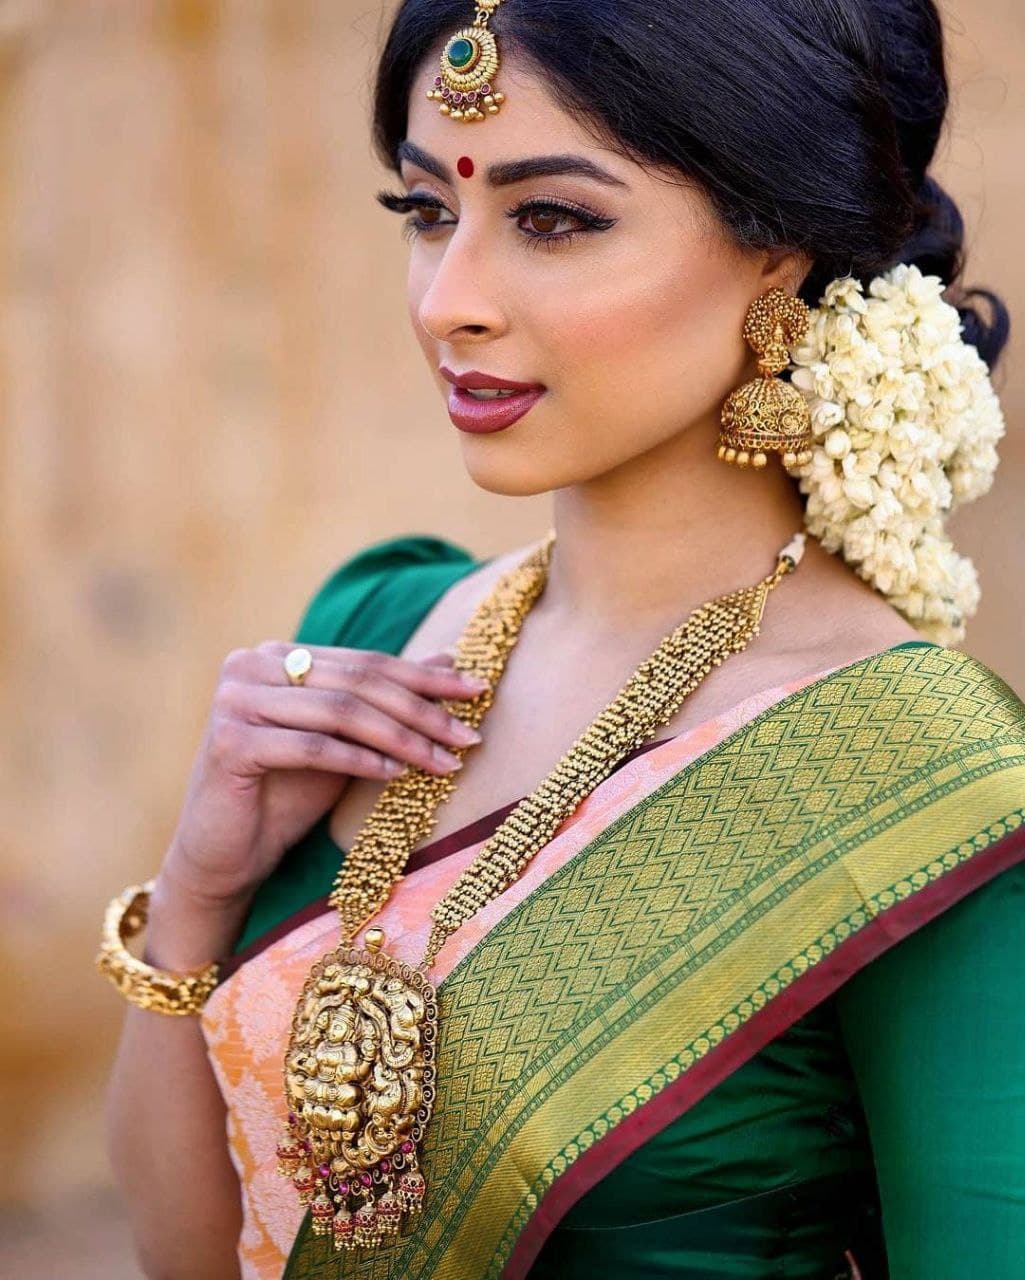 Deepika Padukone in saree – Thatvibesgirl